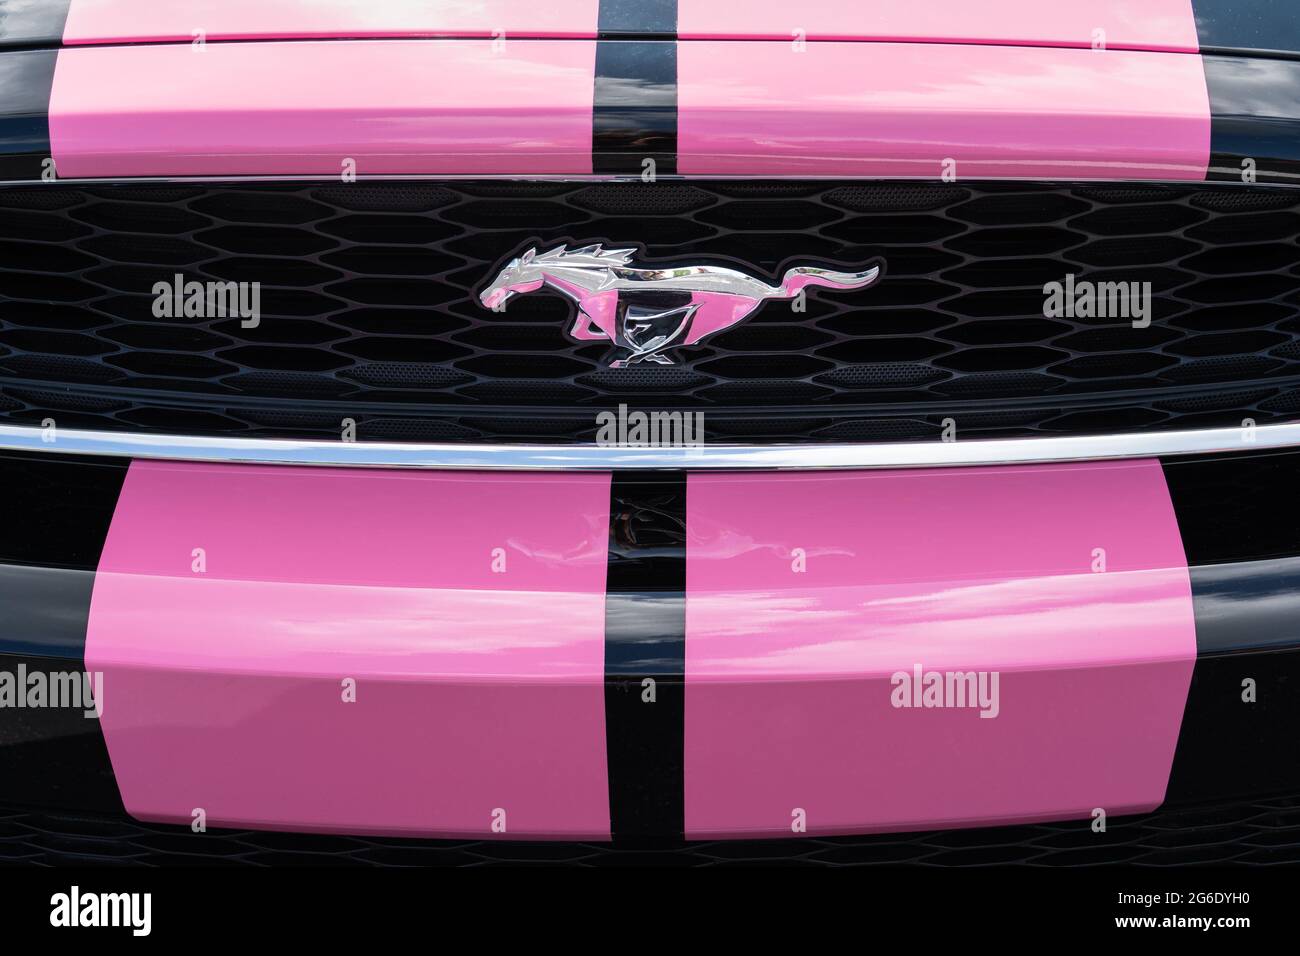 Eureka Springs, AR - 11 de junio de 2021: Ford Mustang corriendo el emblema de pony está en la rejilla de un coche negro con amplias rayas rosadas. Foto de stock